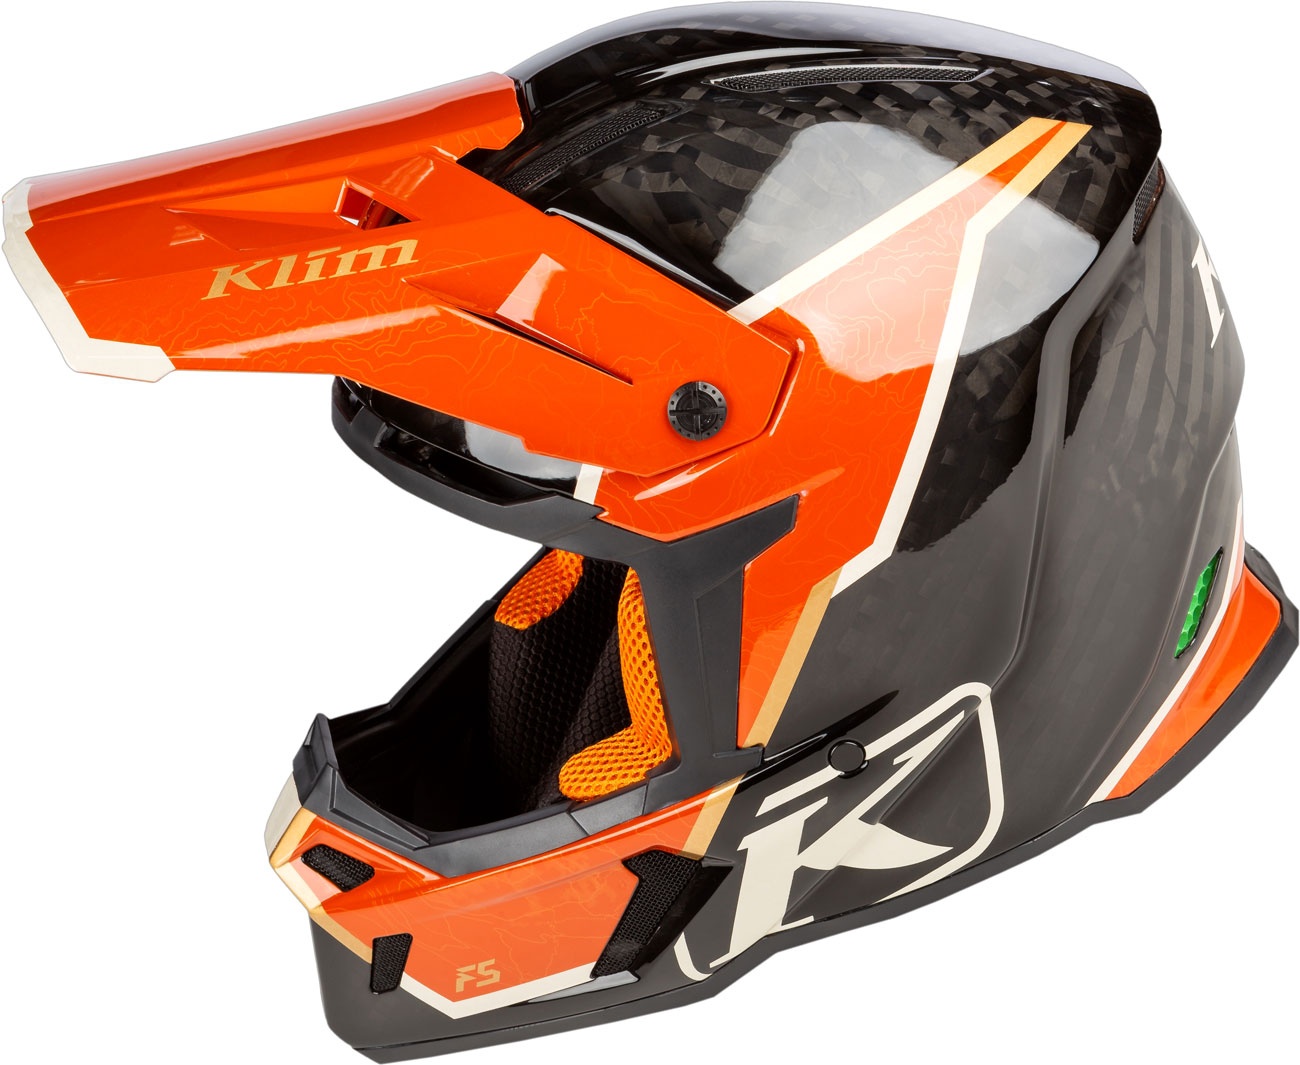 Klim F5 Koroyd Topo, Motocrosshelm - Schwarz/Orange - XXL